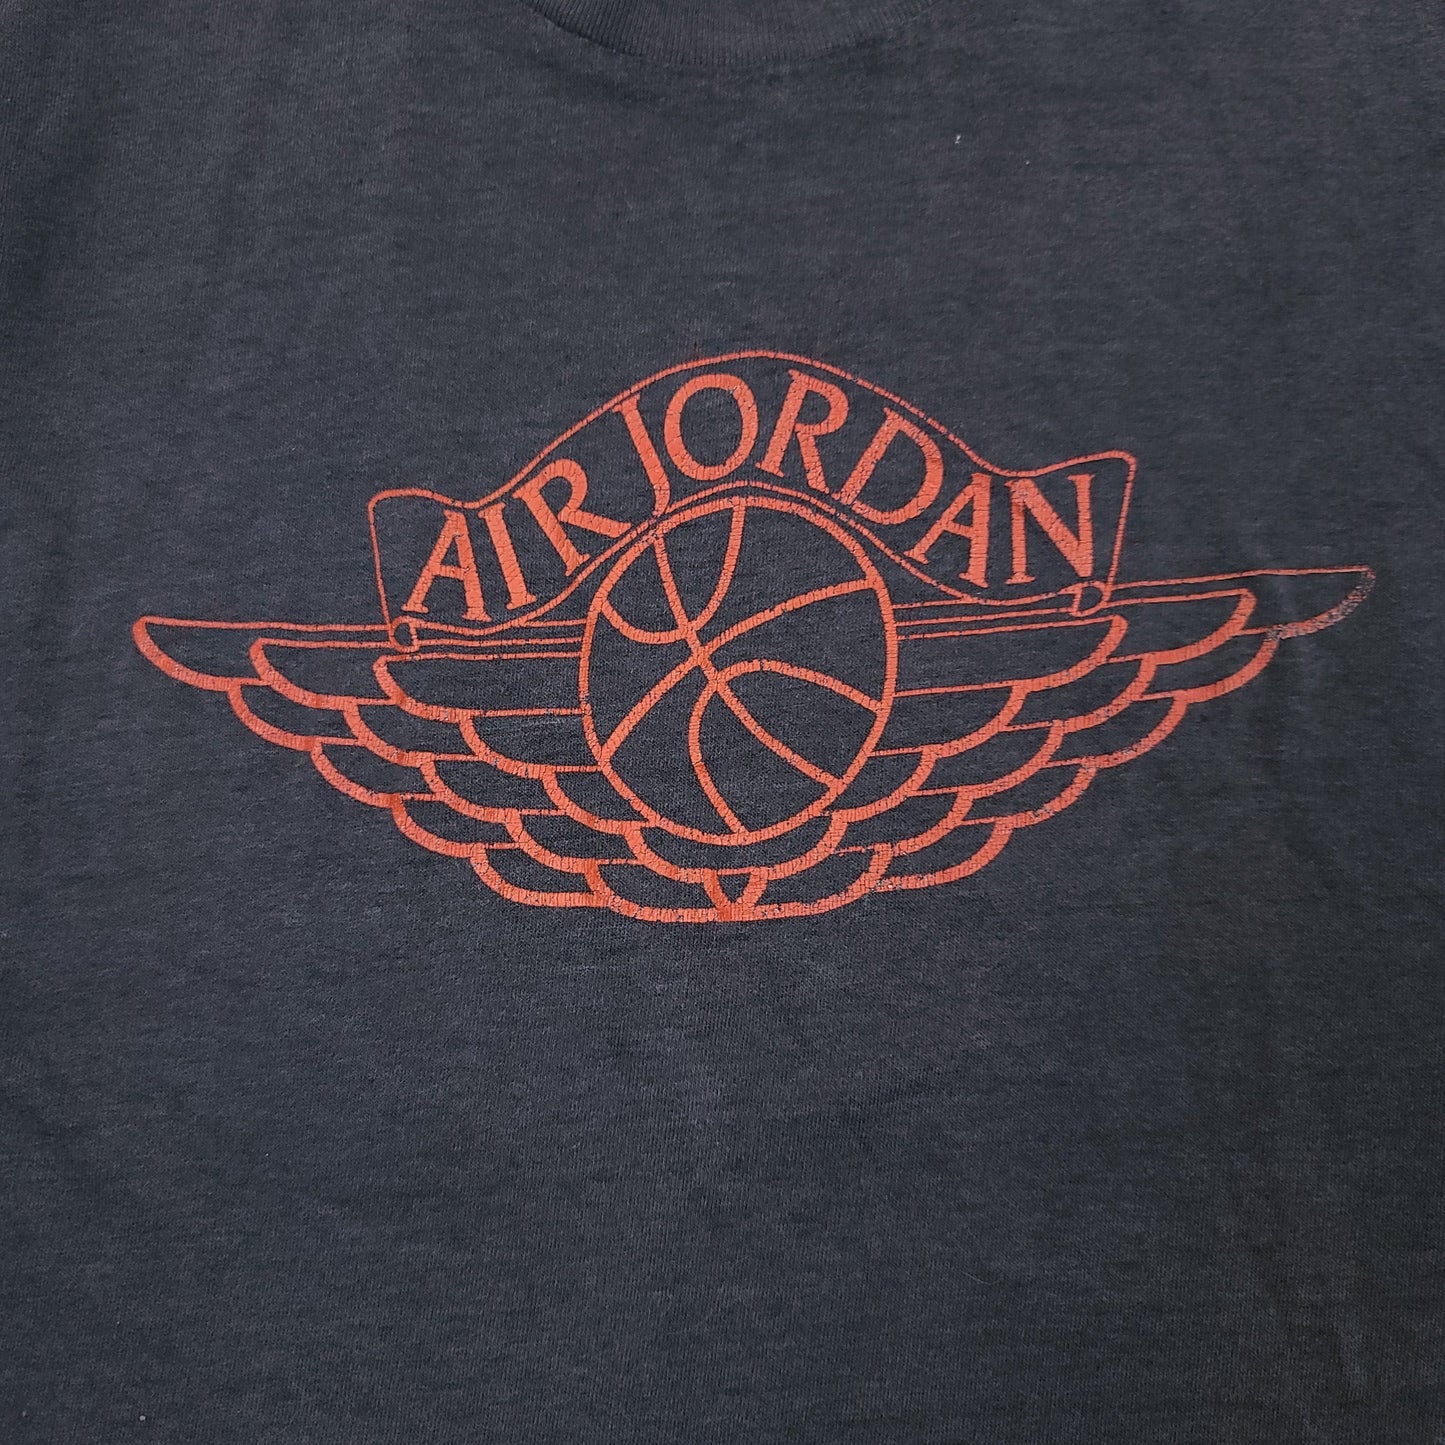 Vintage Nike Air Jordan Wings Faded Black Youth Shirt